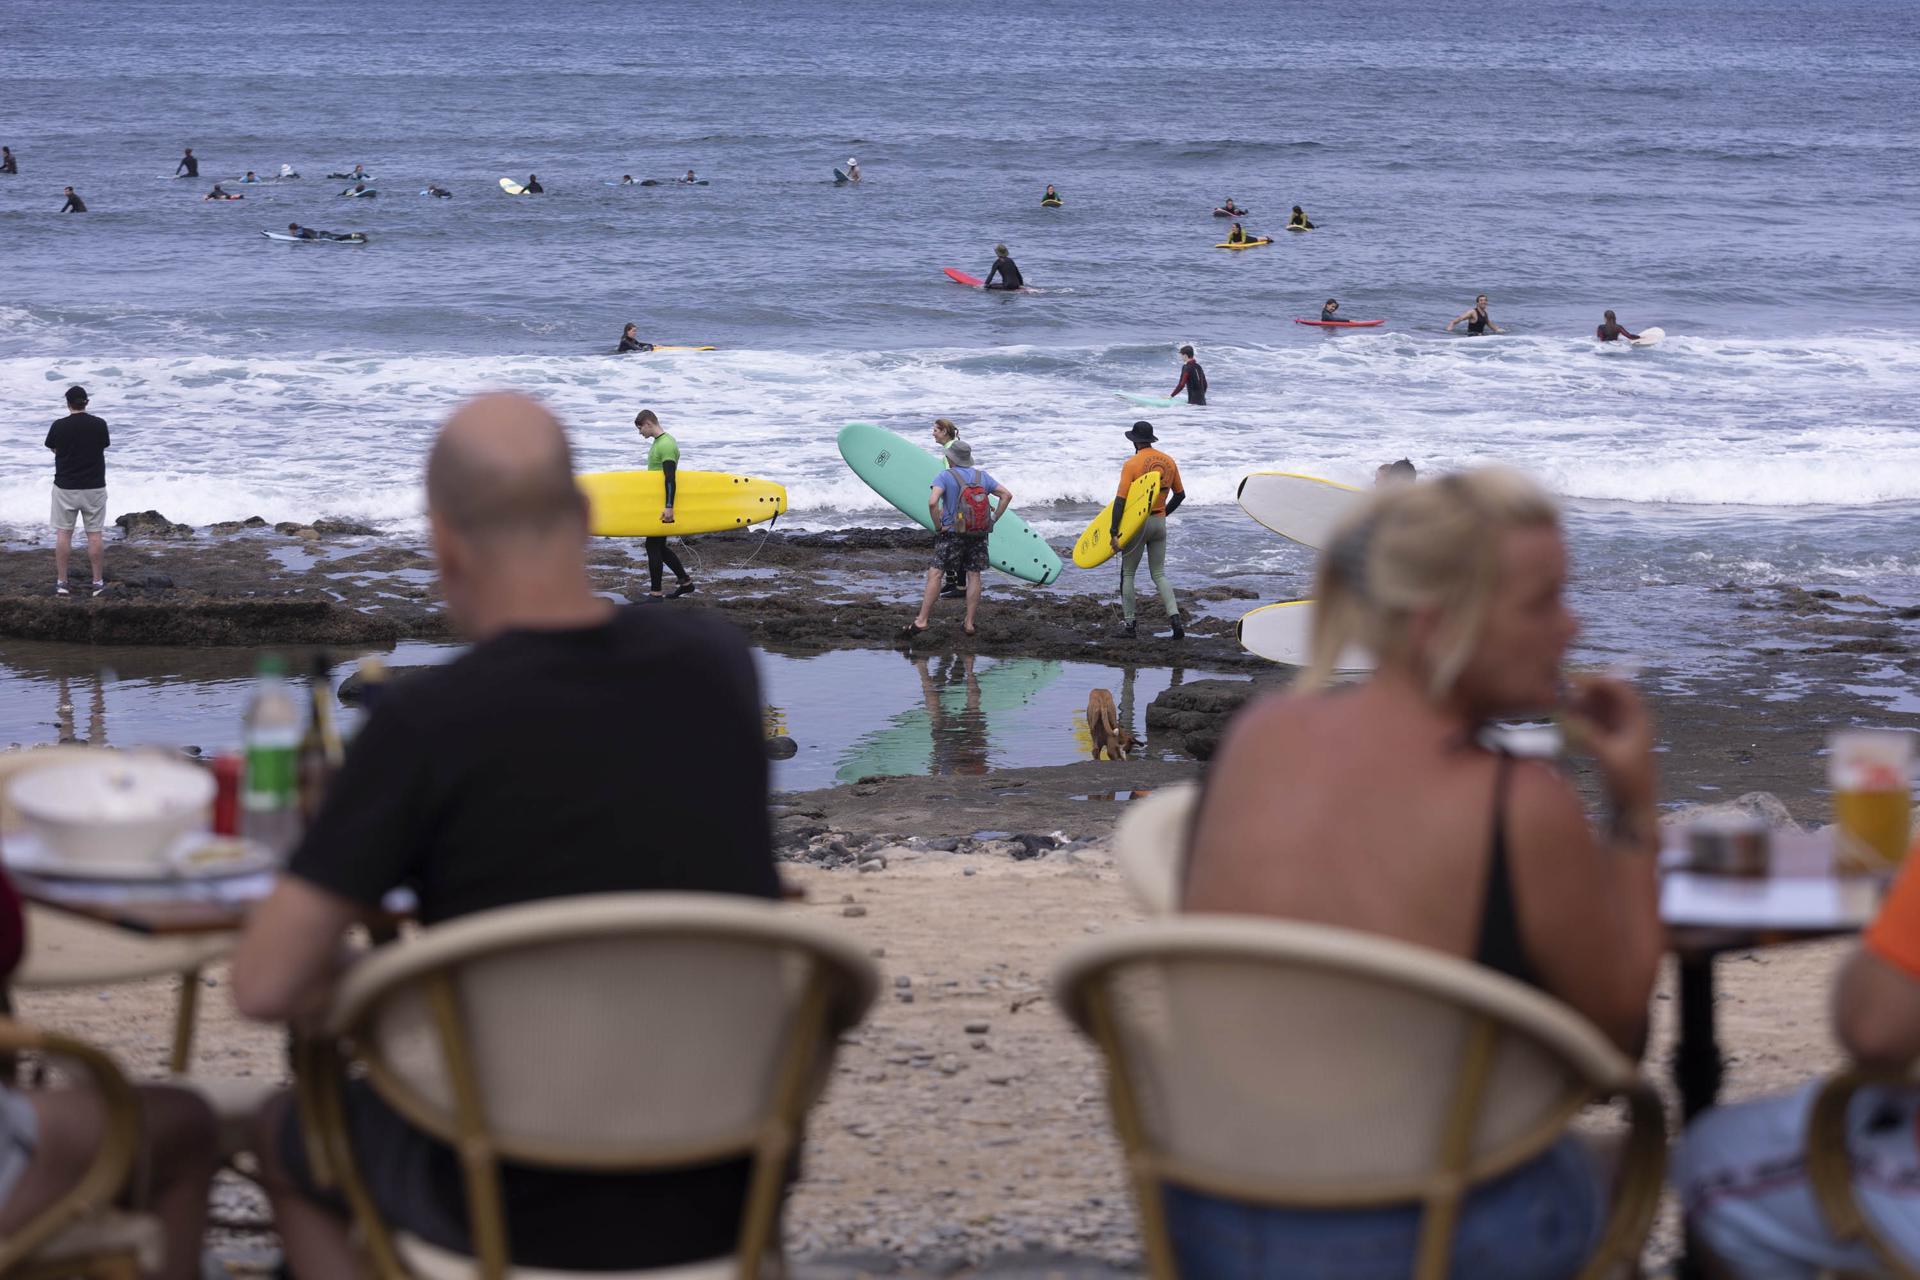 En la imagen, unos turistas extranjeros disfrutan de un día de playa en la zona de El Conquistador, al sur de Tenerife. EFE/ Miguel Barreto